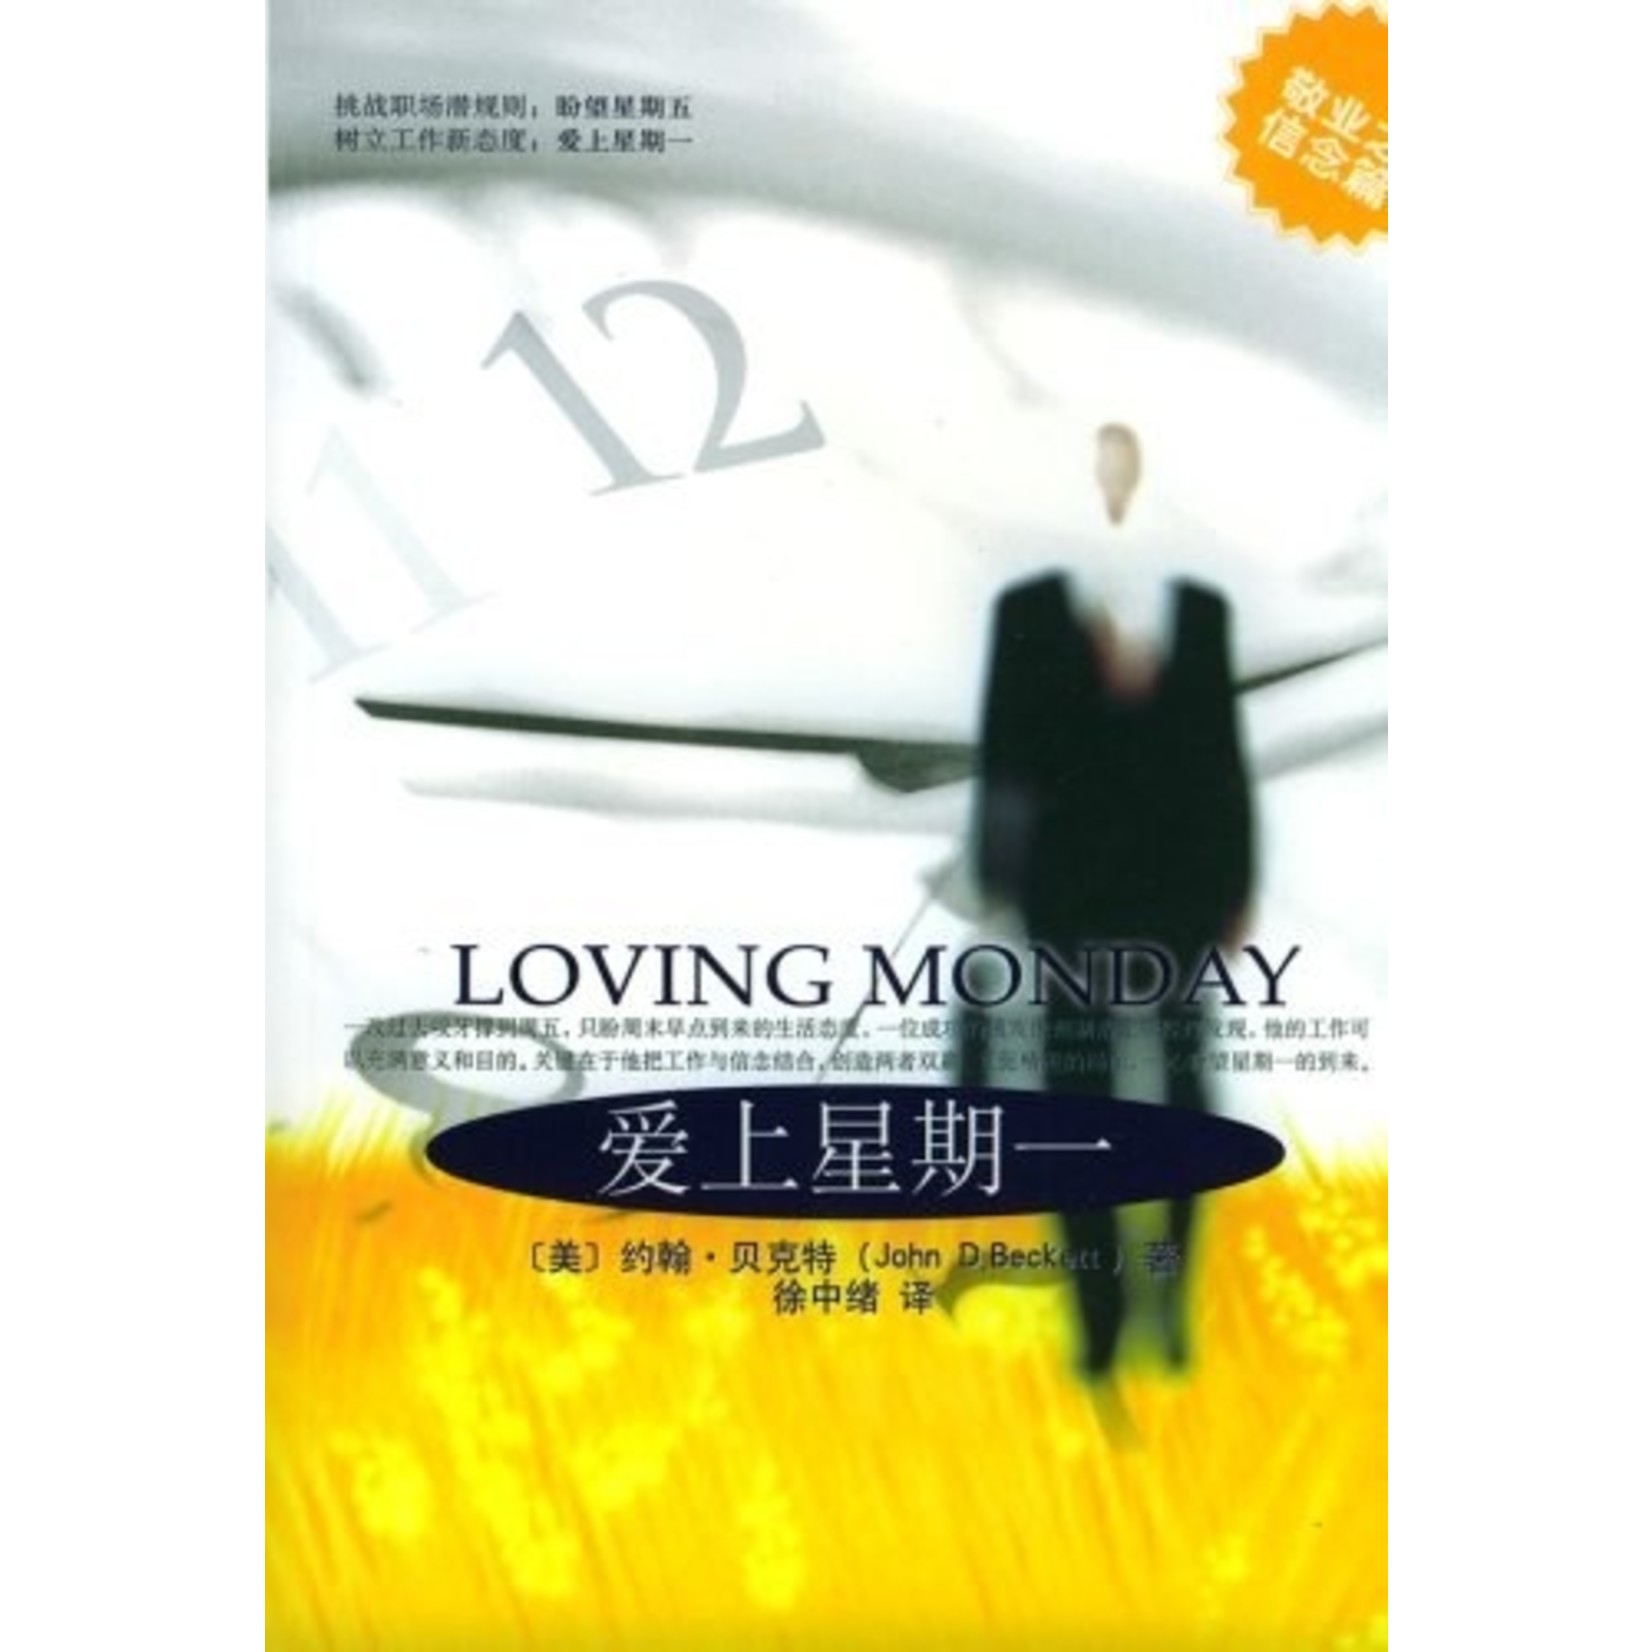 內蒙古人民出版社 Inner Mongolia People's Publishing House 爱上星期一 | Loving Monday : Succeeding in Business without Selling Your Soul